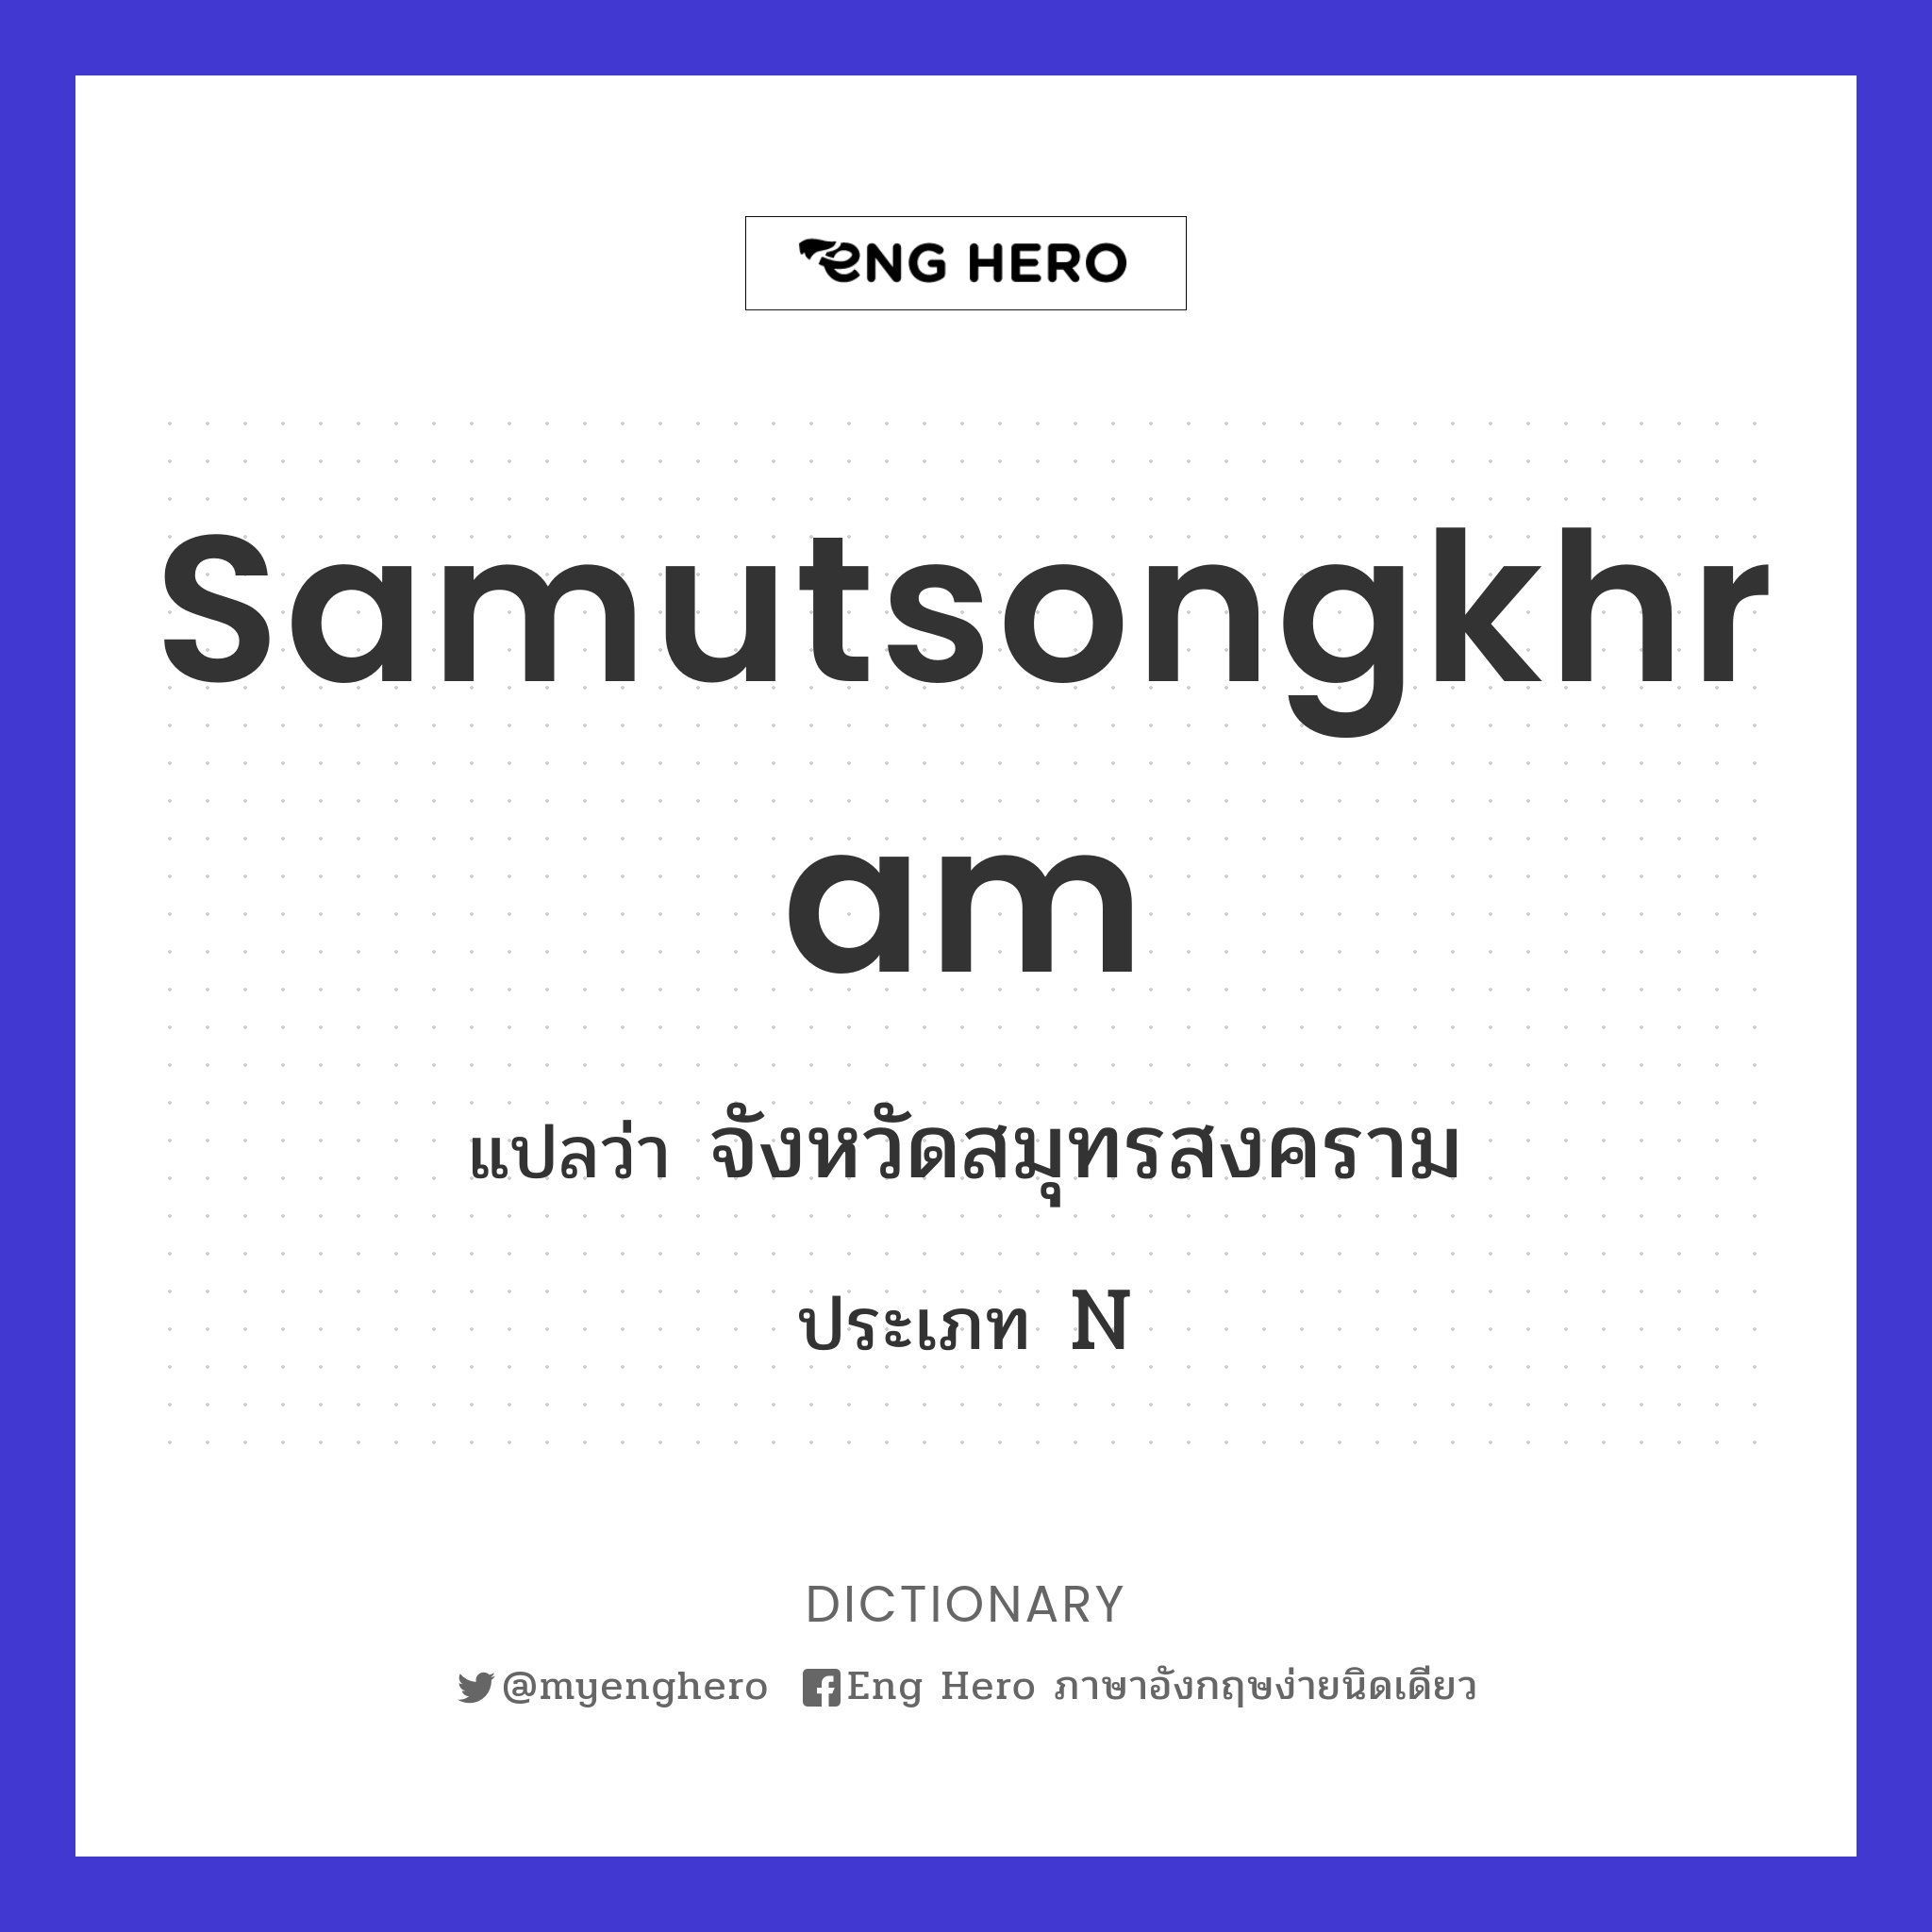 Samutsongkhram